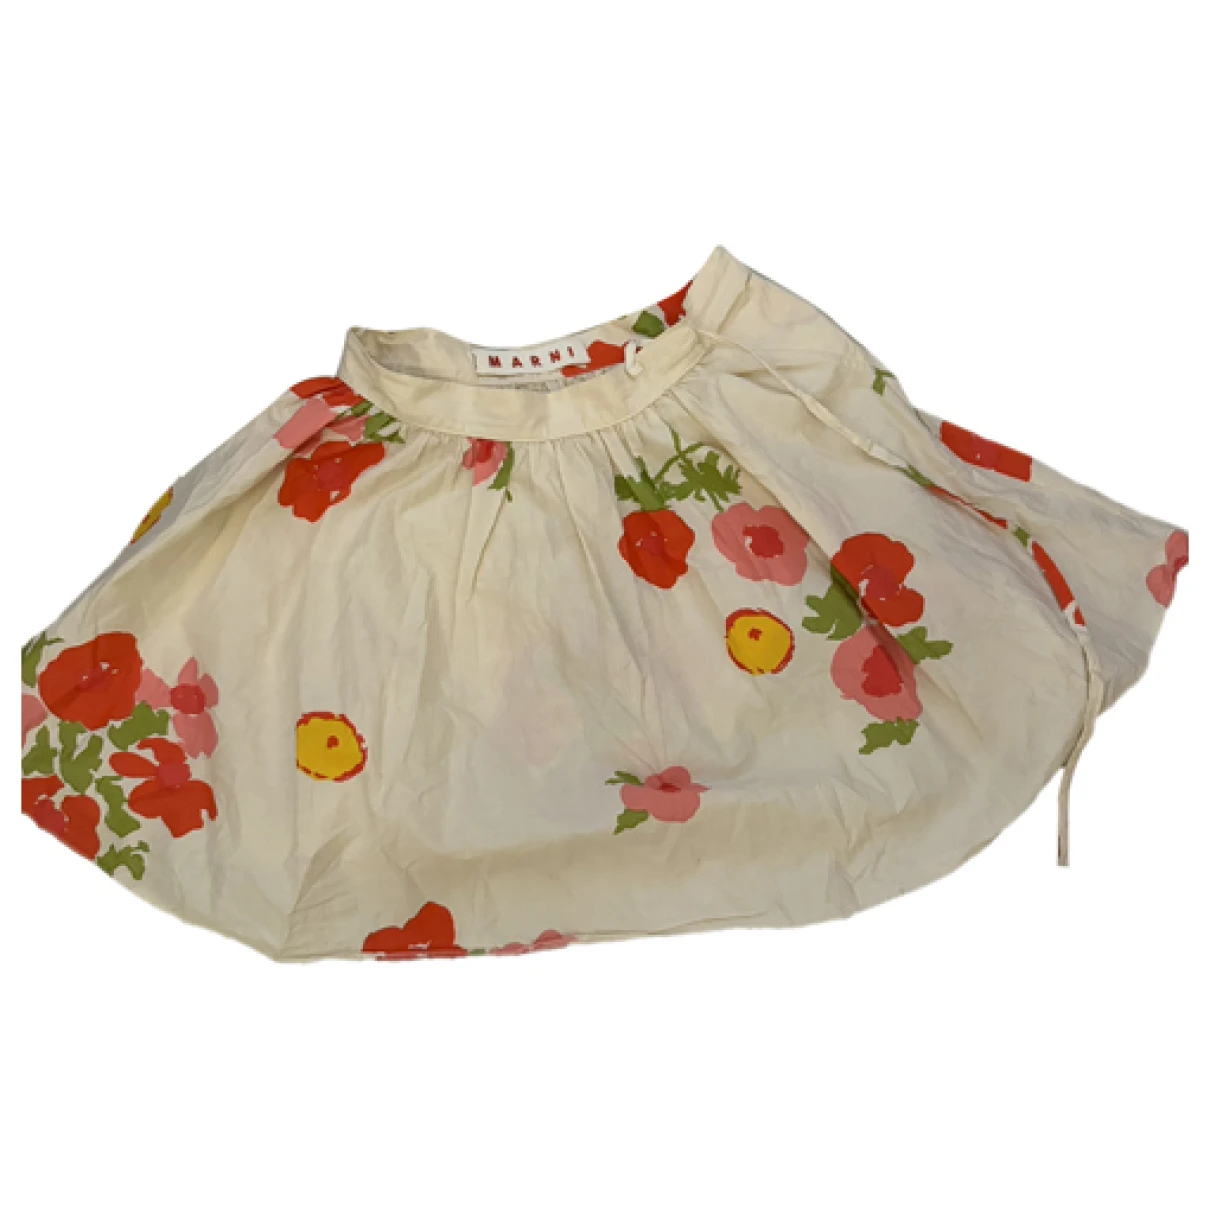 Pre-owned Marni Mini Skirt In Beige